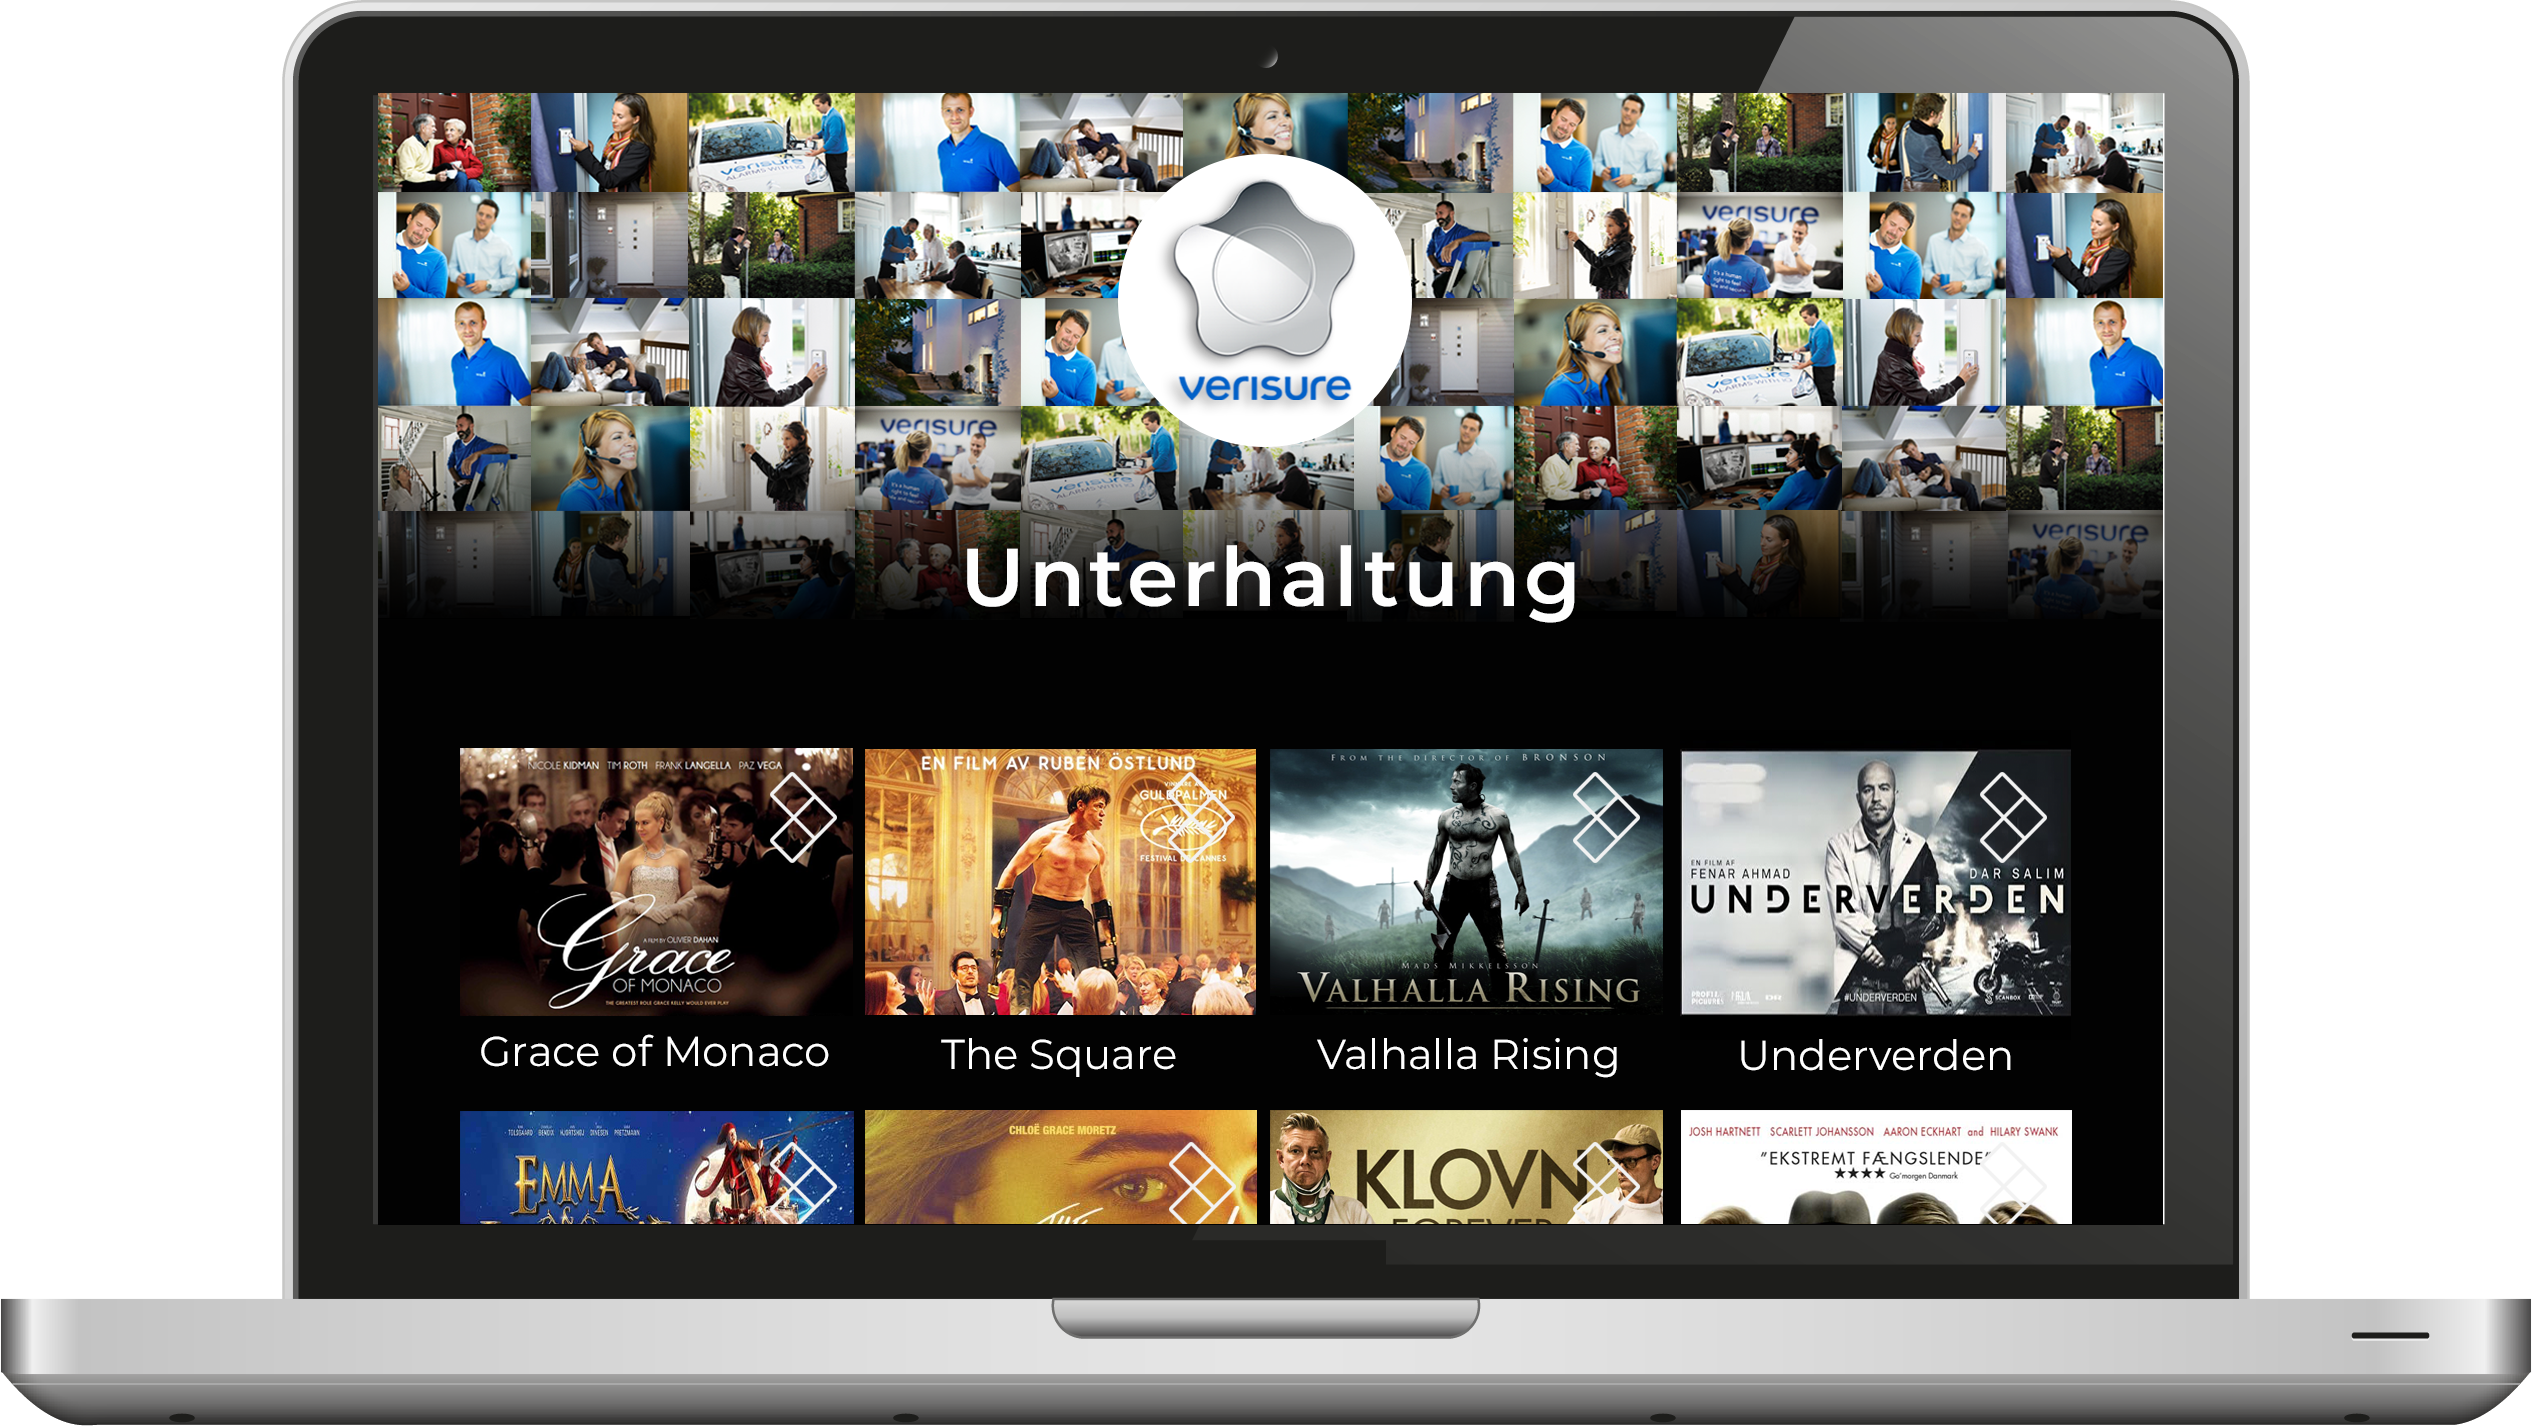 Verisure-VOD-platform-Playeo-unterhaltung_german